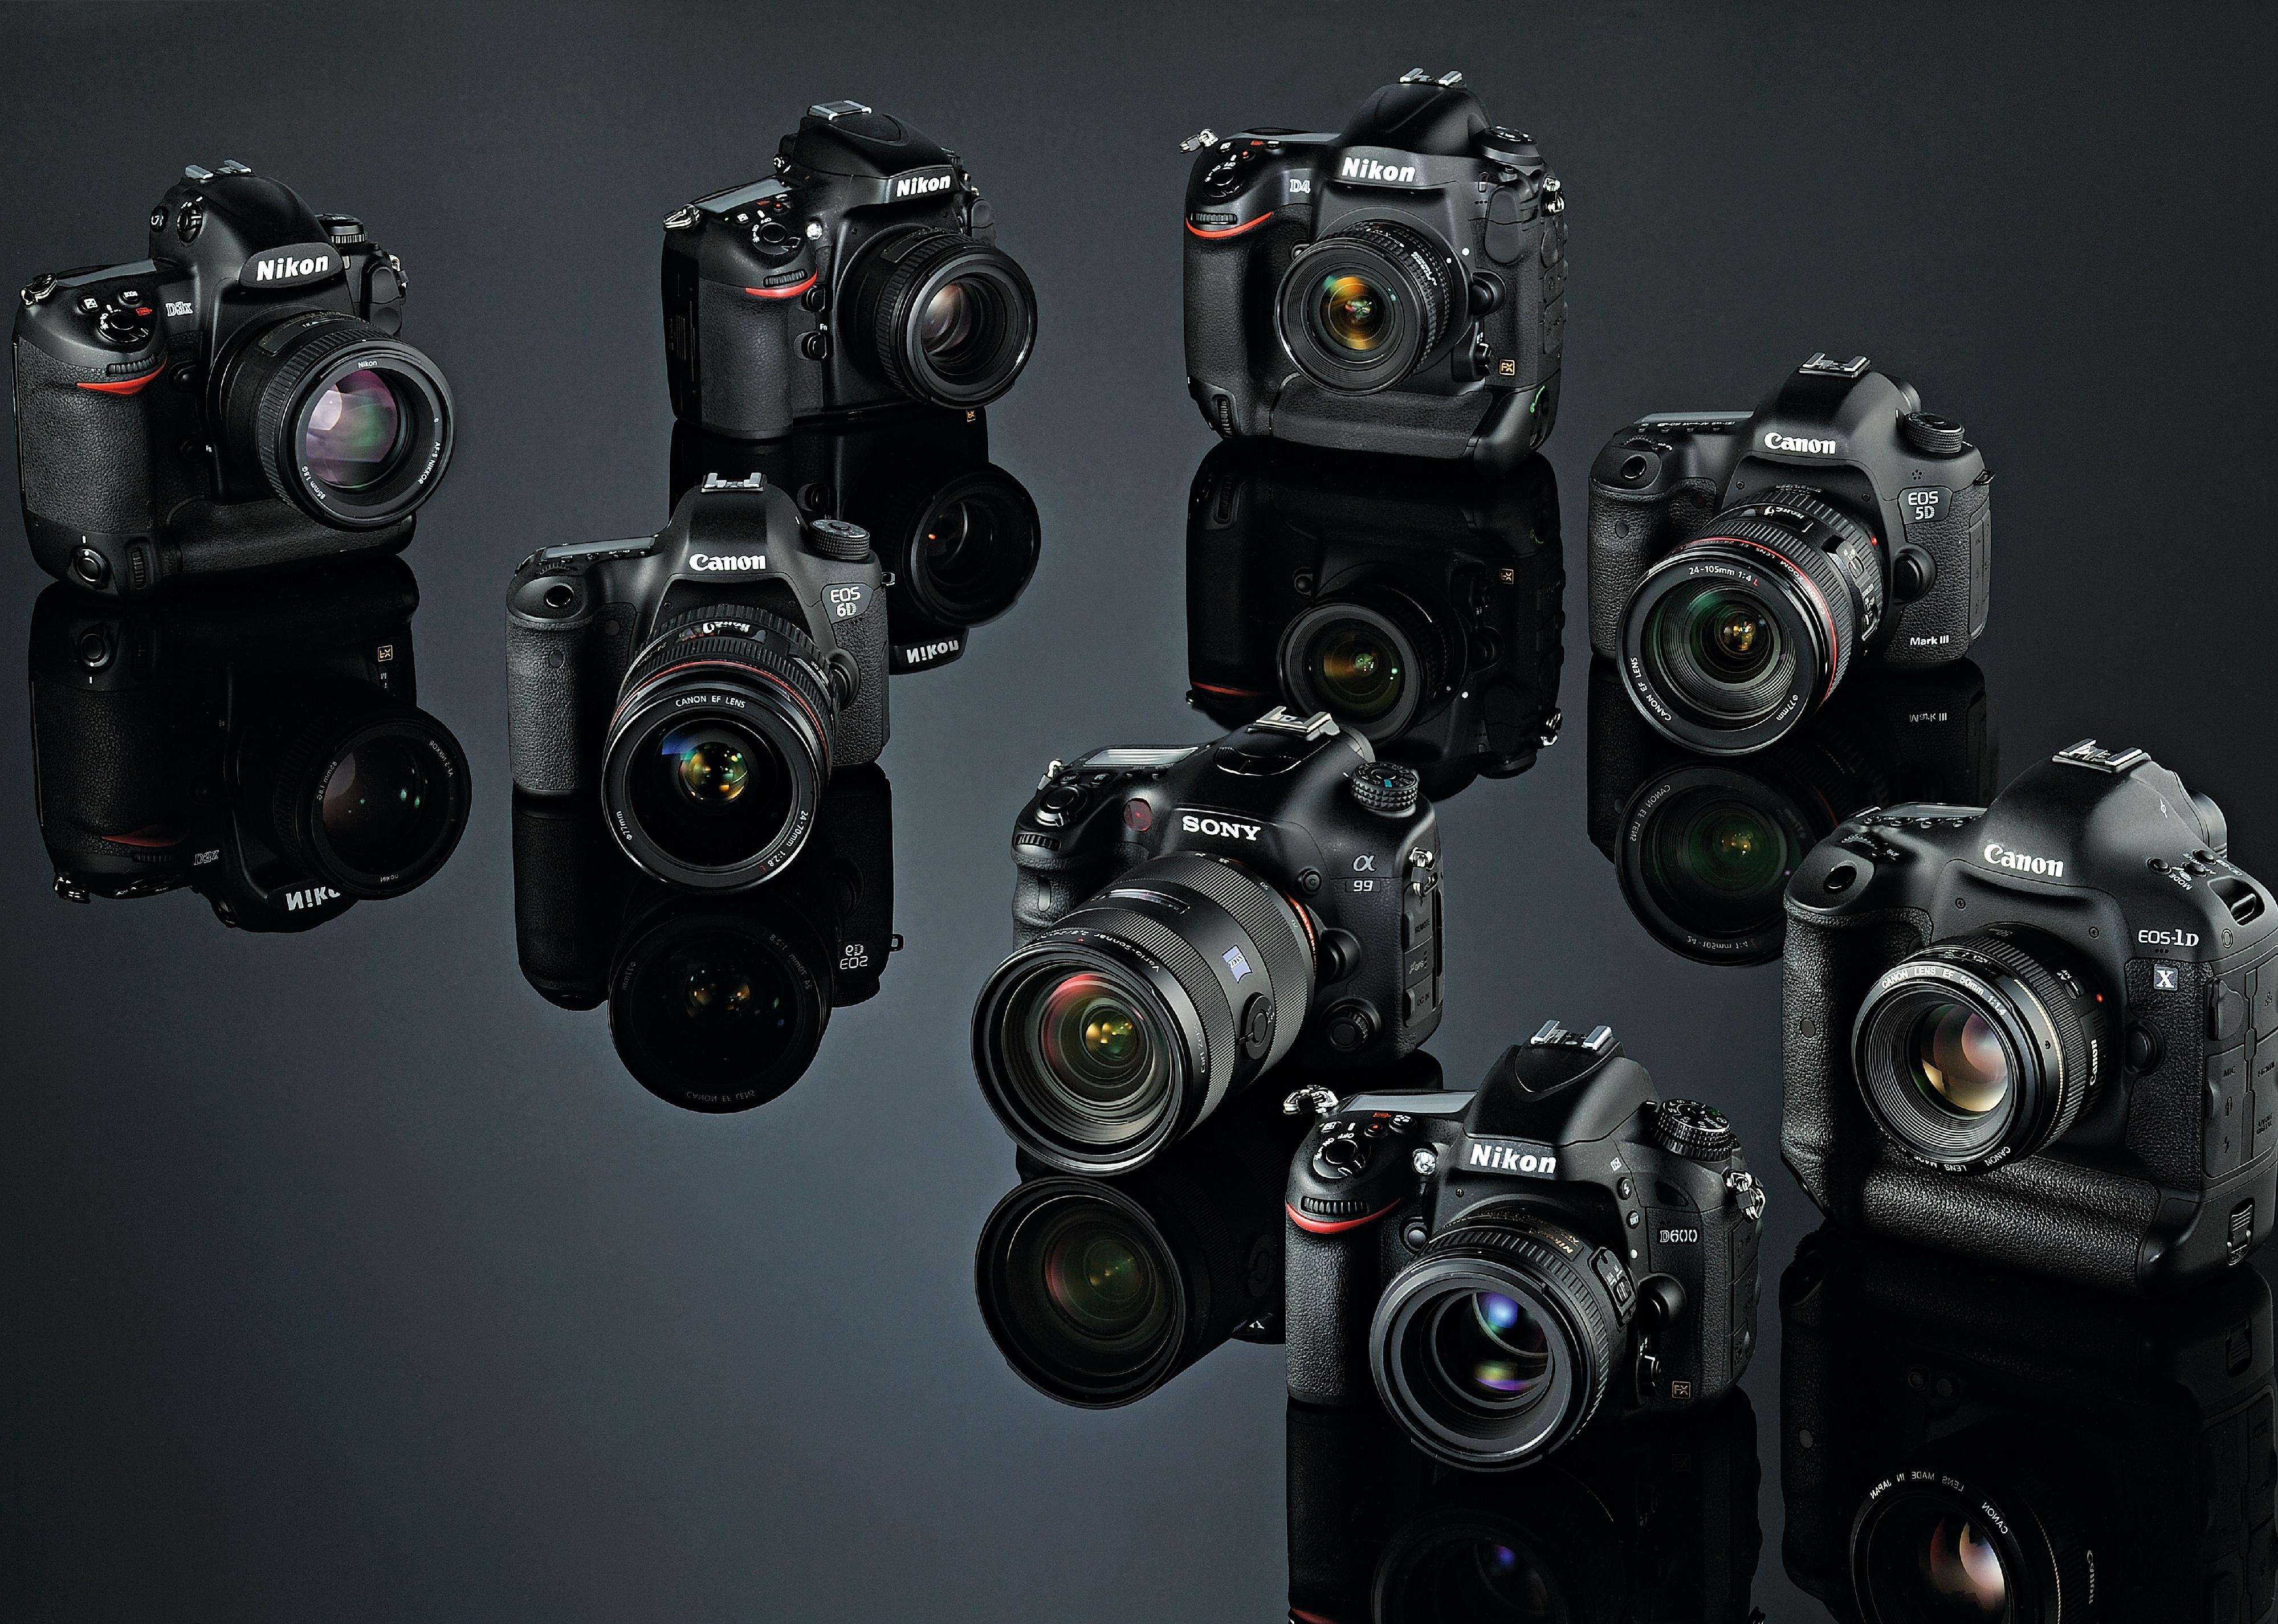 A selection of full-frame digital SLR